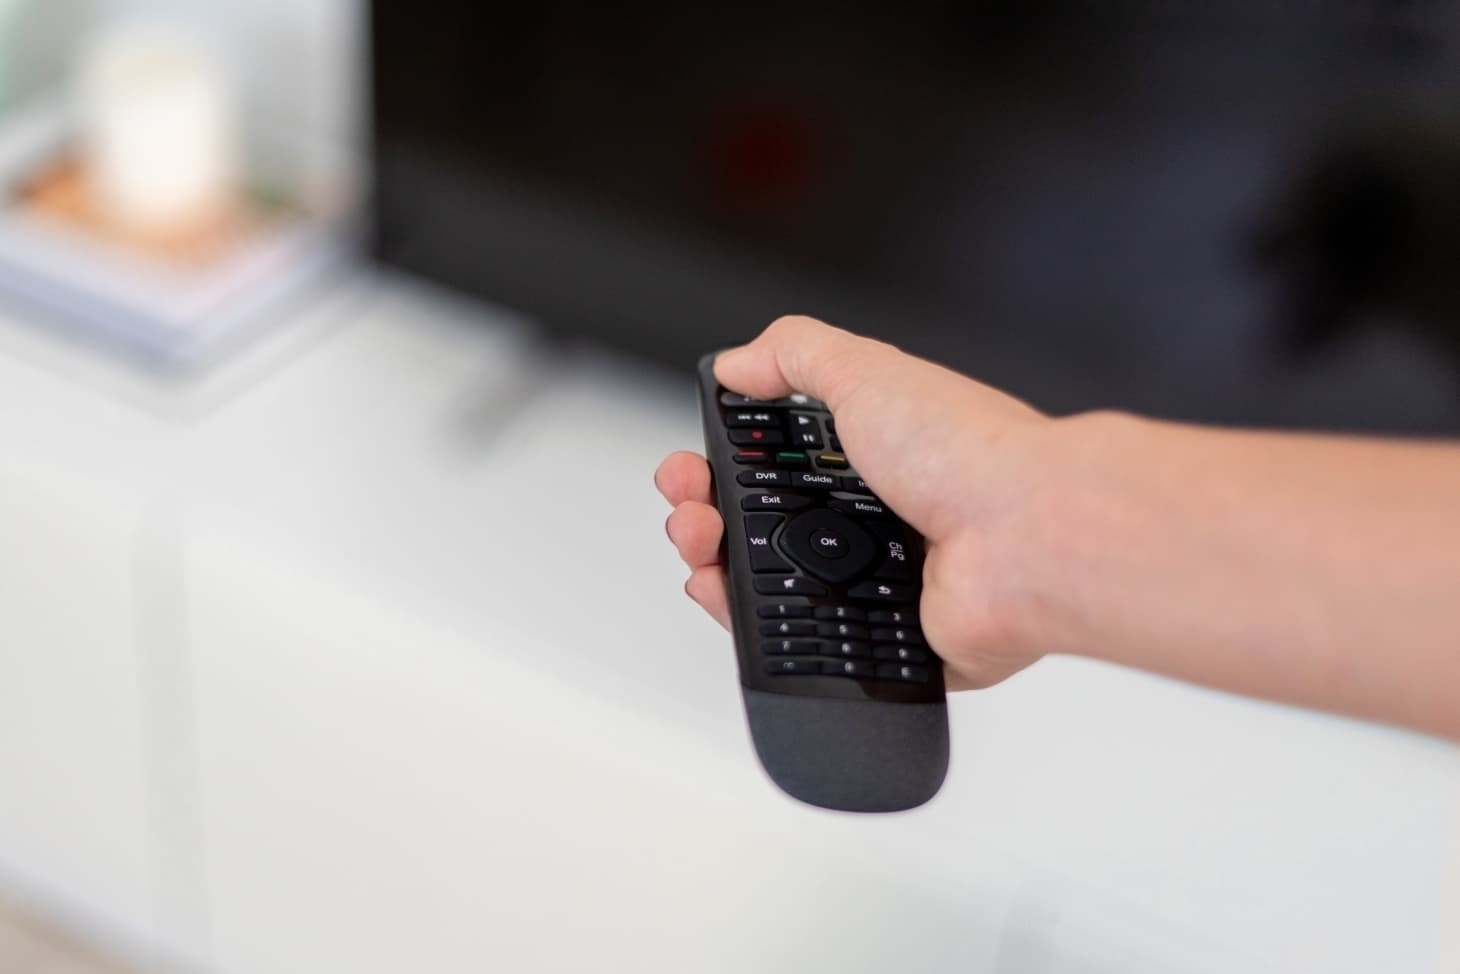 Как чистить экран телевизора: пошаговая инструкция для повседневной и тщательной уборки